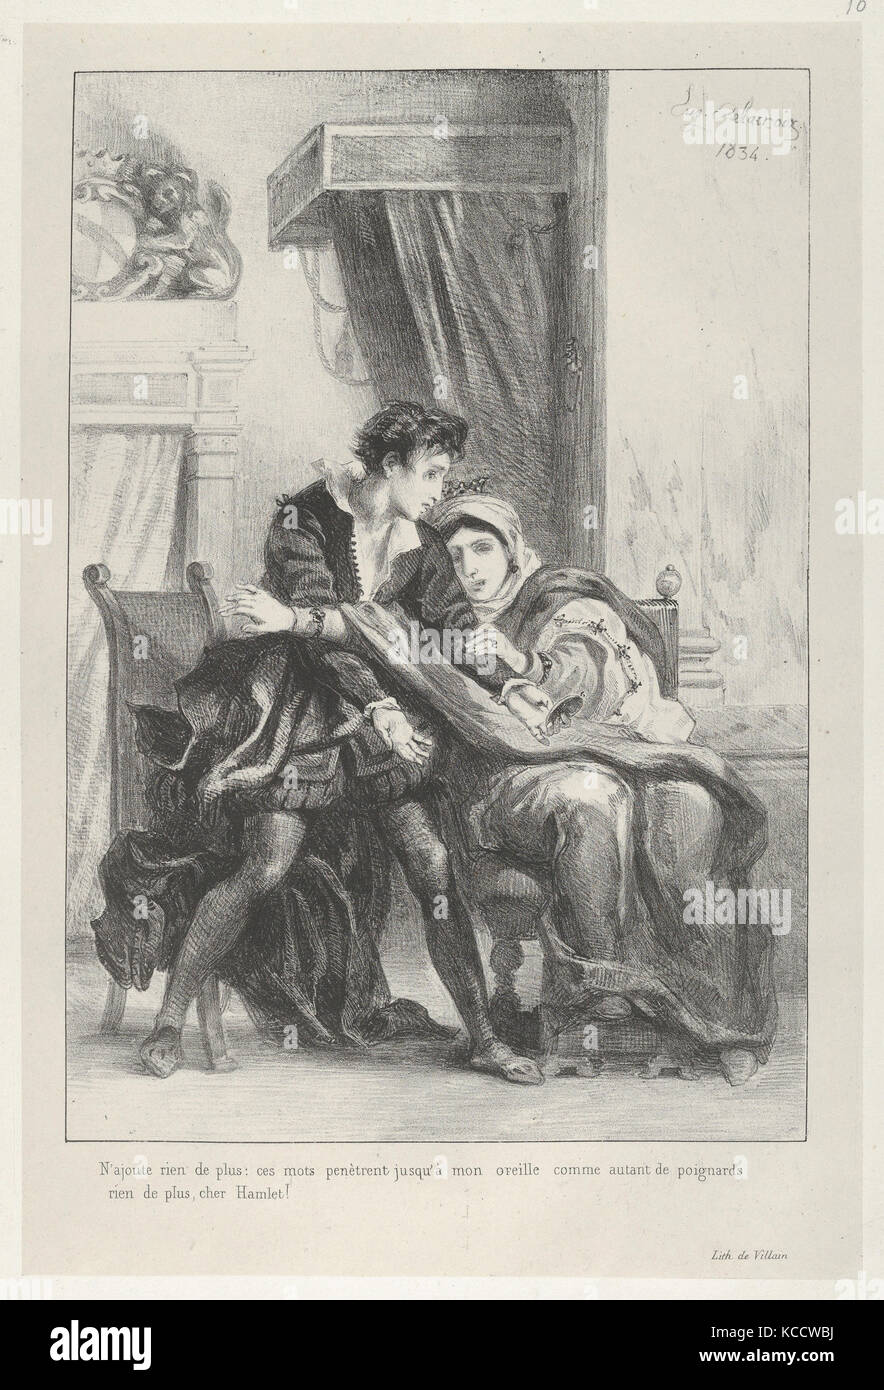 Borgo e la Regina, 1834, litografia; Stato terzo di quattro, Immagine: 10 1/8 x 7 in. (25,7 x 17,8 cm), stampe, Eugène Delacroix Foto Stock